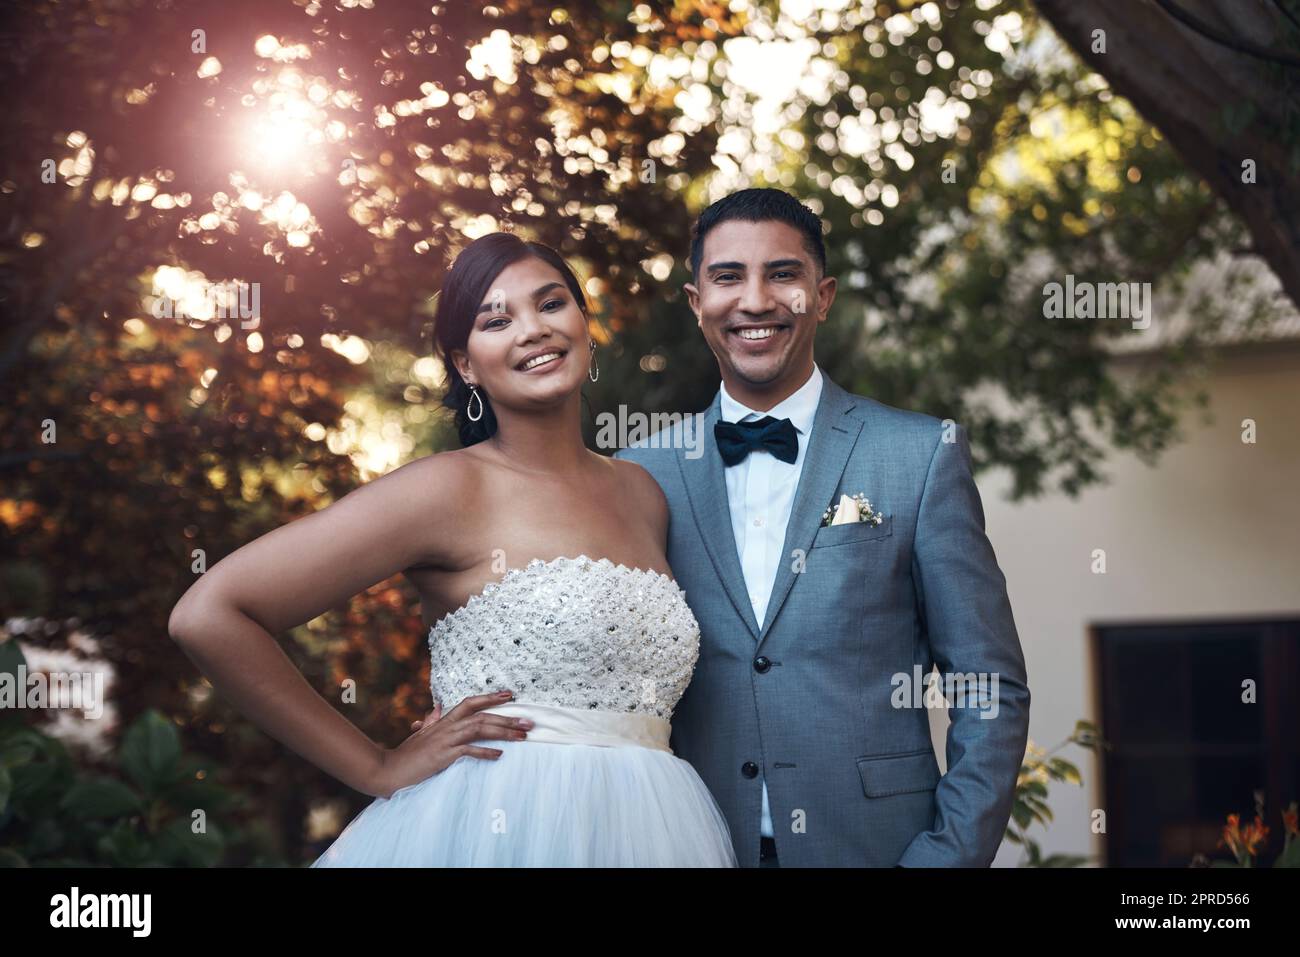 Wir feierten heute unseren großen Tag. Ein junges Paar posiert draußen an ihrem Hochzeitstag. Stockfoto